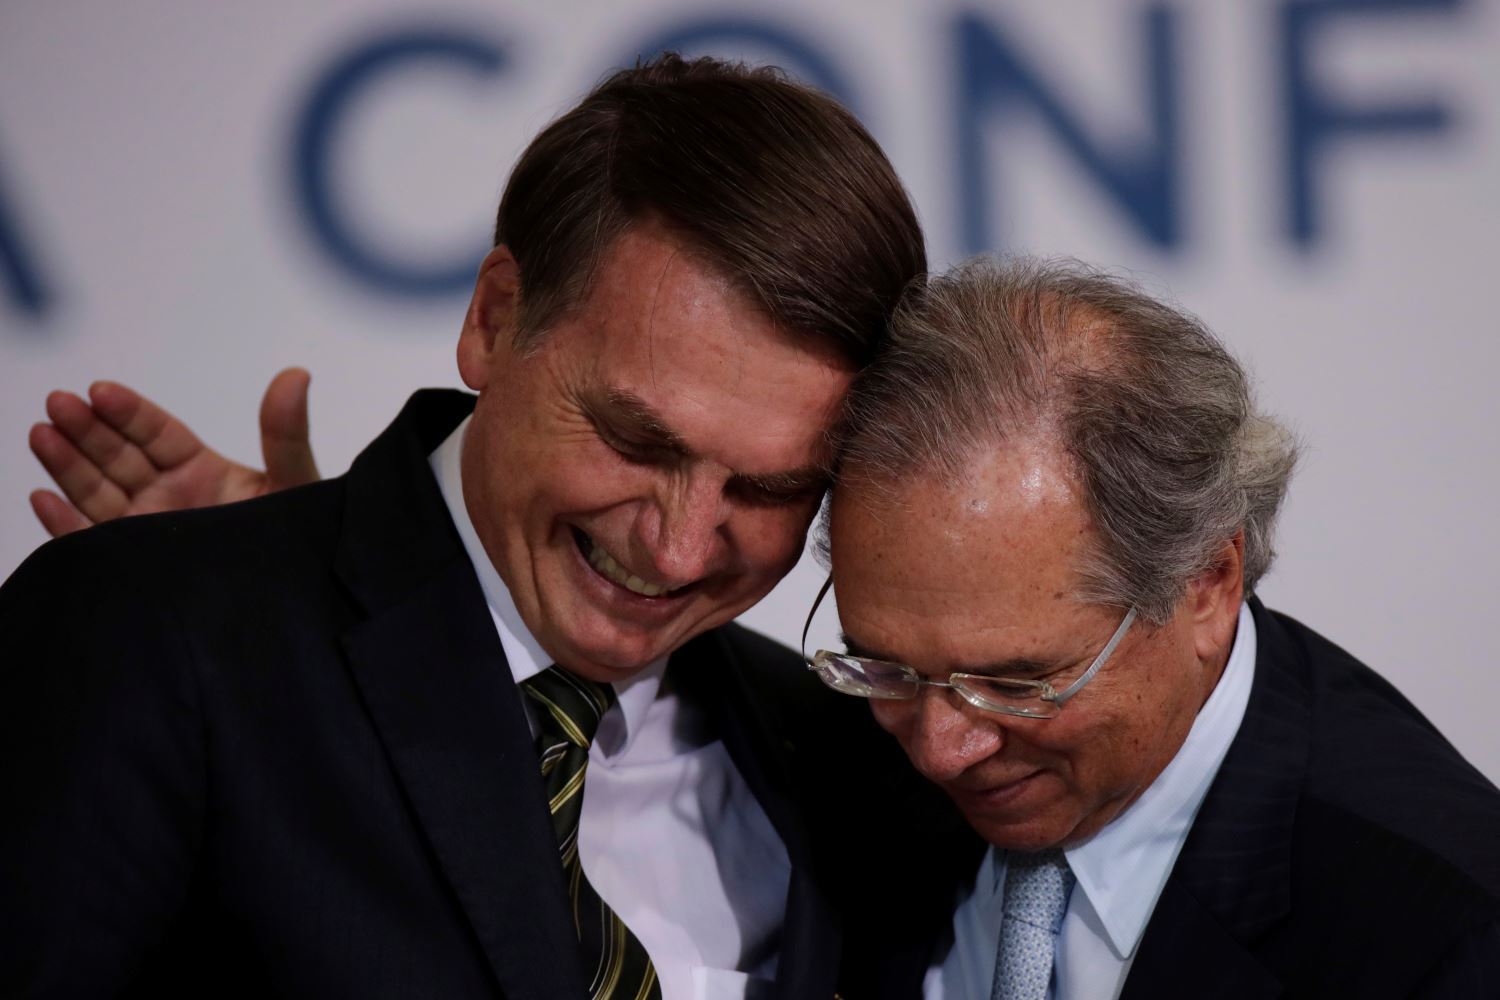 Bolsonaro e Guedes